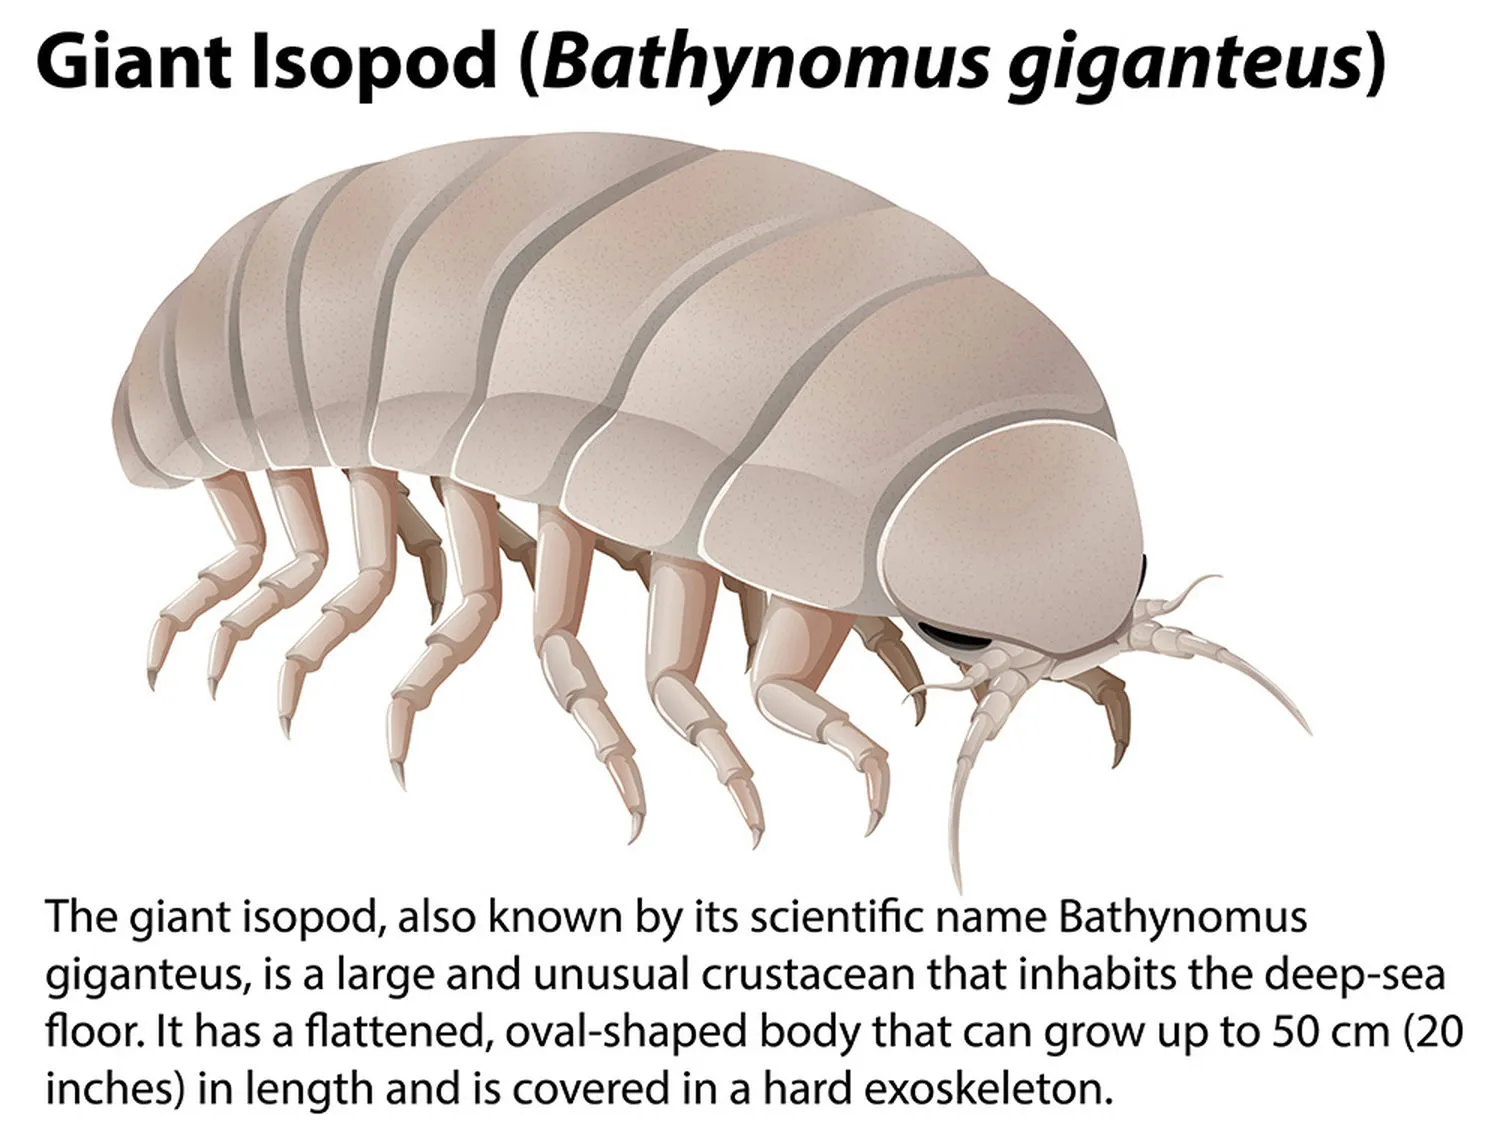 The Giant isopod